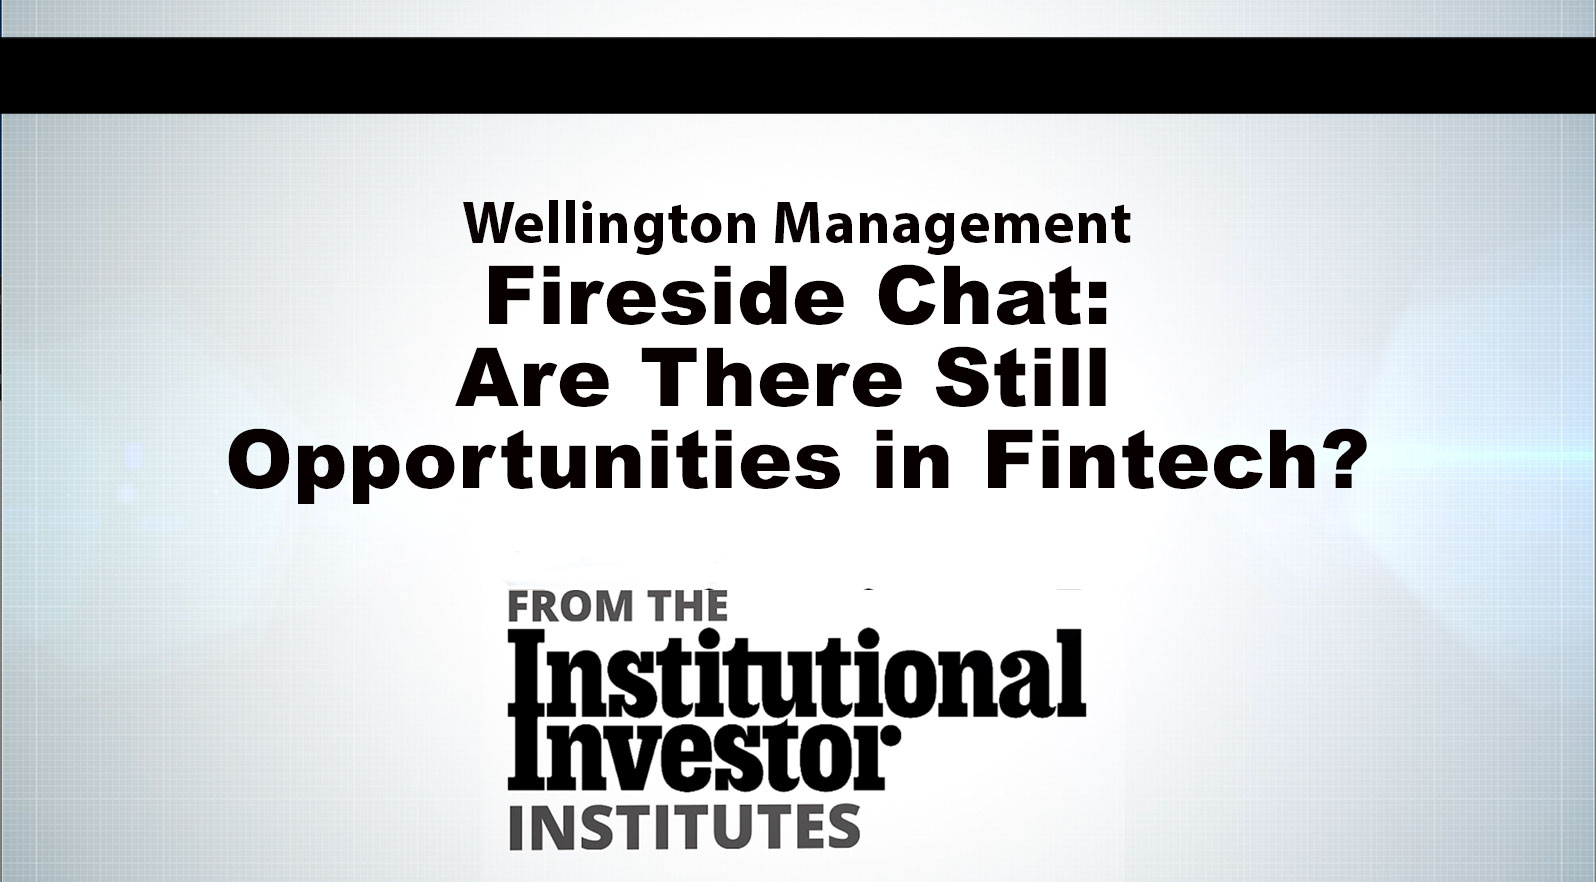 与惠灵顿管理层的炉边谈话:金融科技还有机会吗?